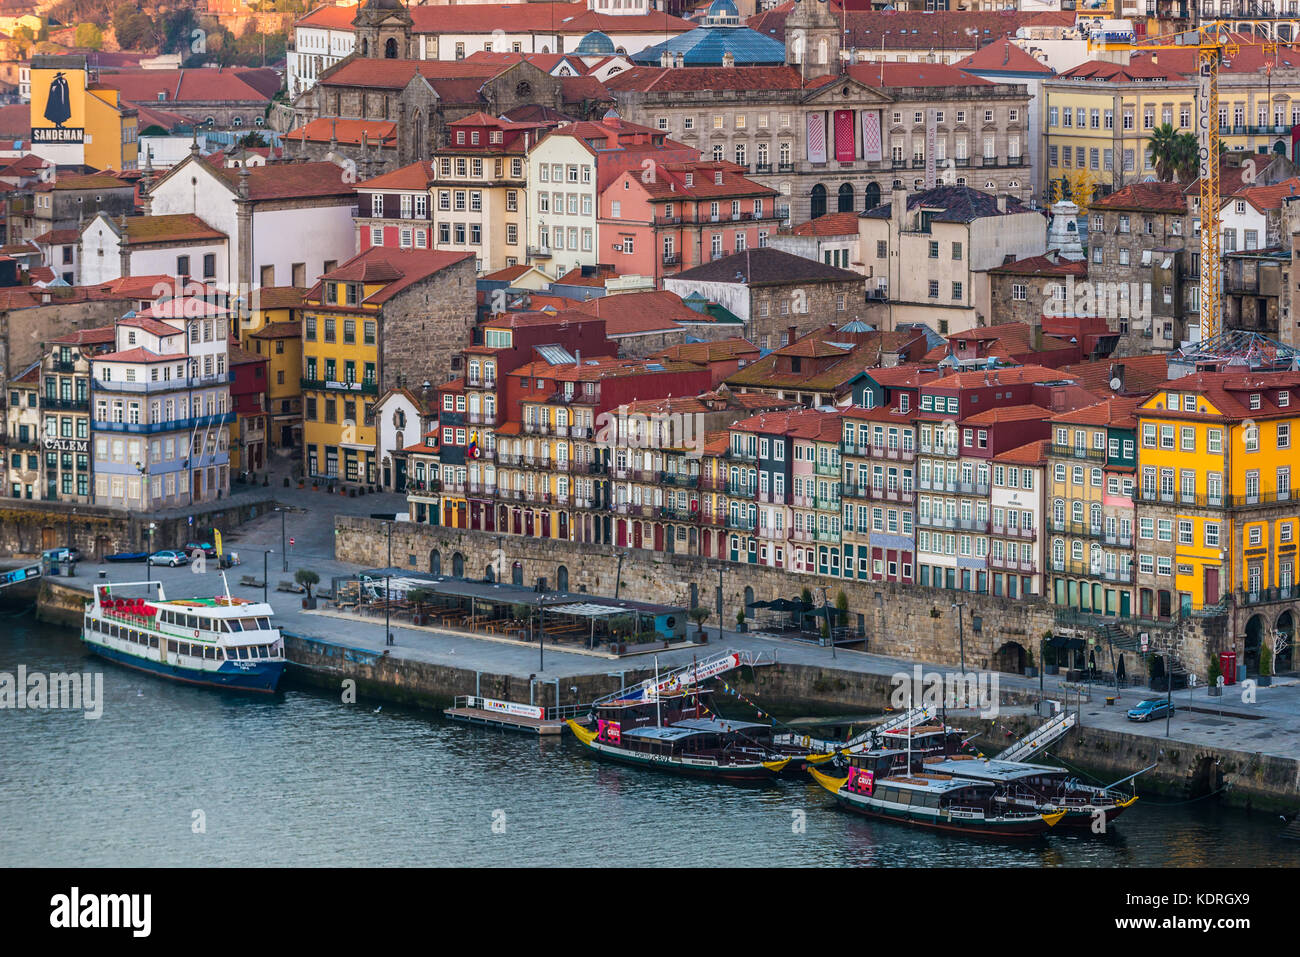 Case del quartiere Ribeira nella città di Porto sulla penisola iberica, seconda città più grande del Portogallo Foto Stock